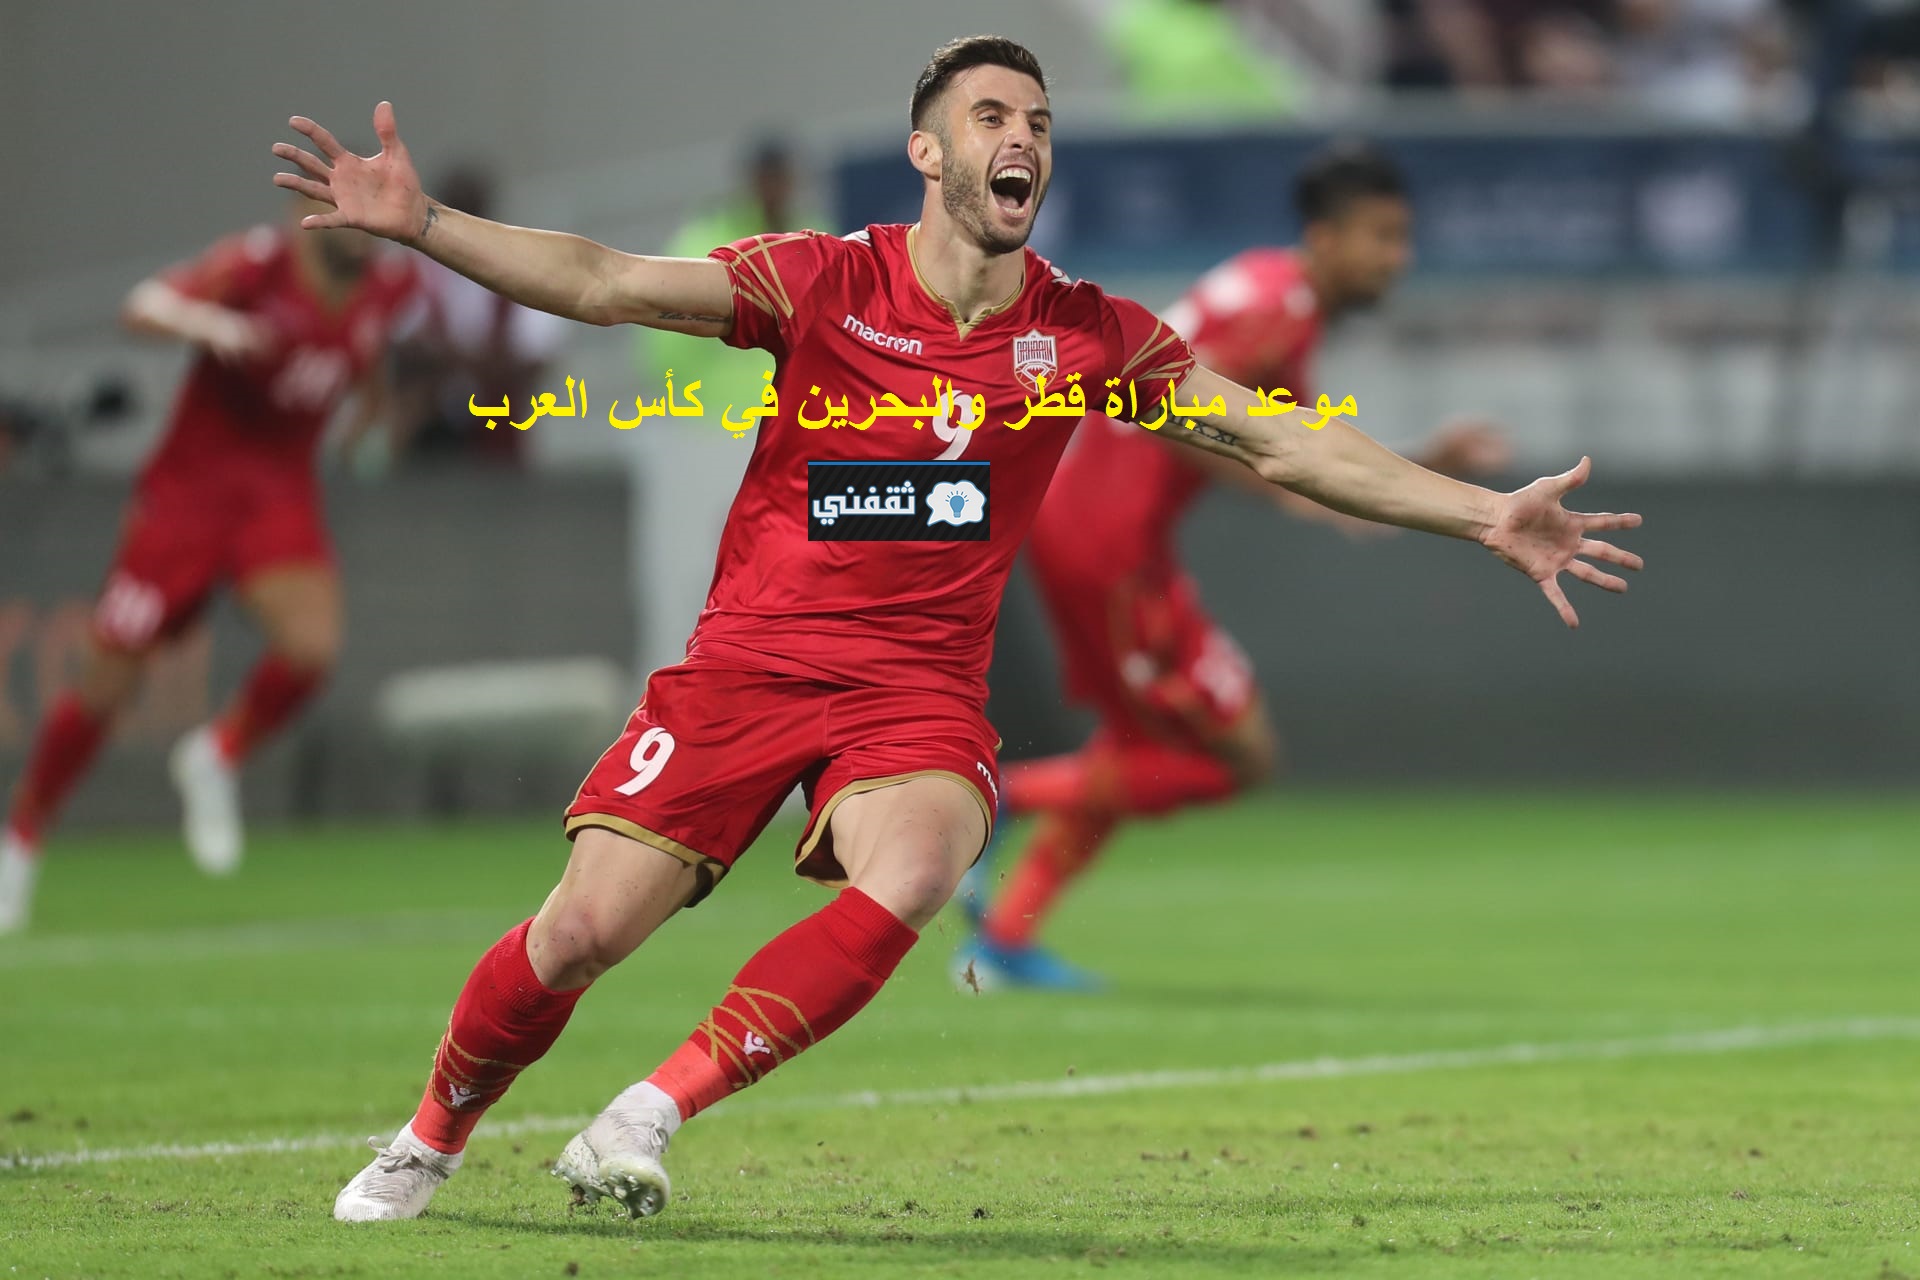 “الانطلاقة” موعد مباراة قطر والبحرين في كأس العرب 2021/11/30 والقنوات المفتوحة الناقلة